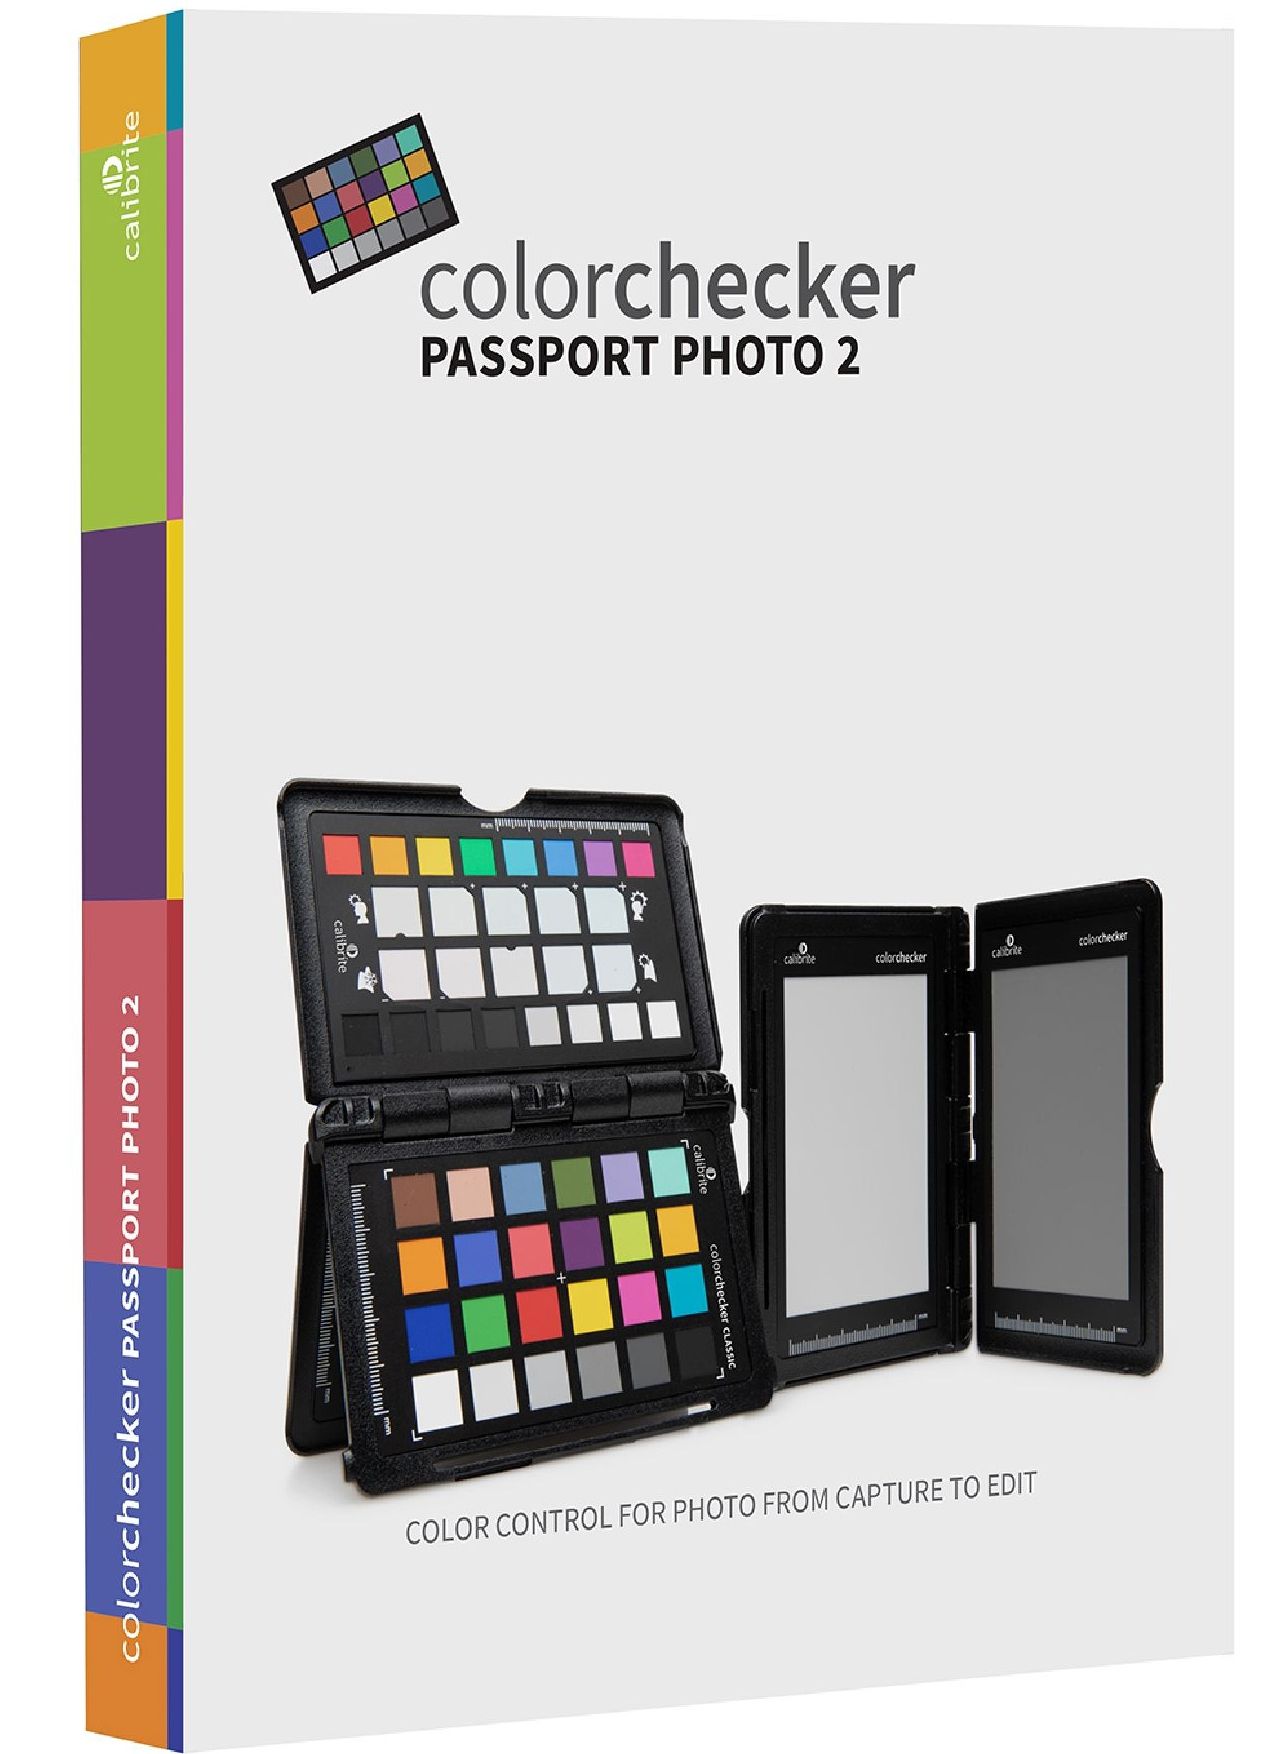 Calibrite ColorChecker Classic — Color Confidence